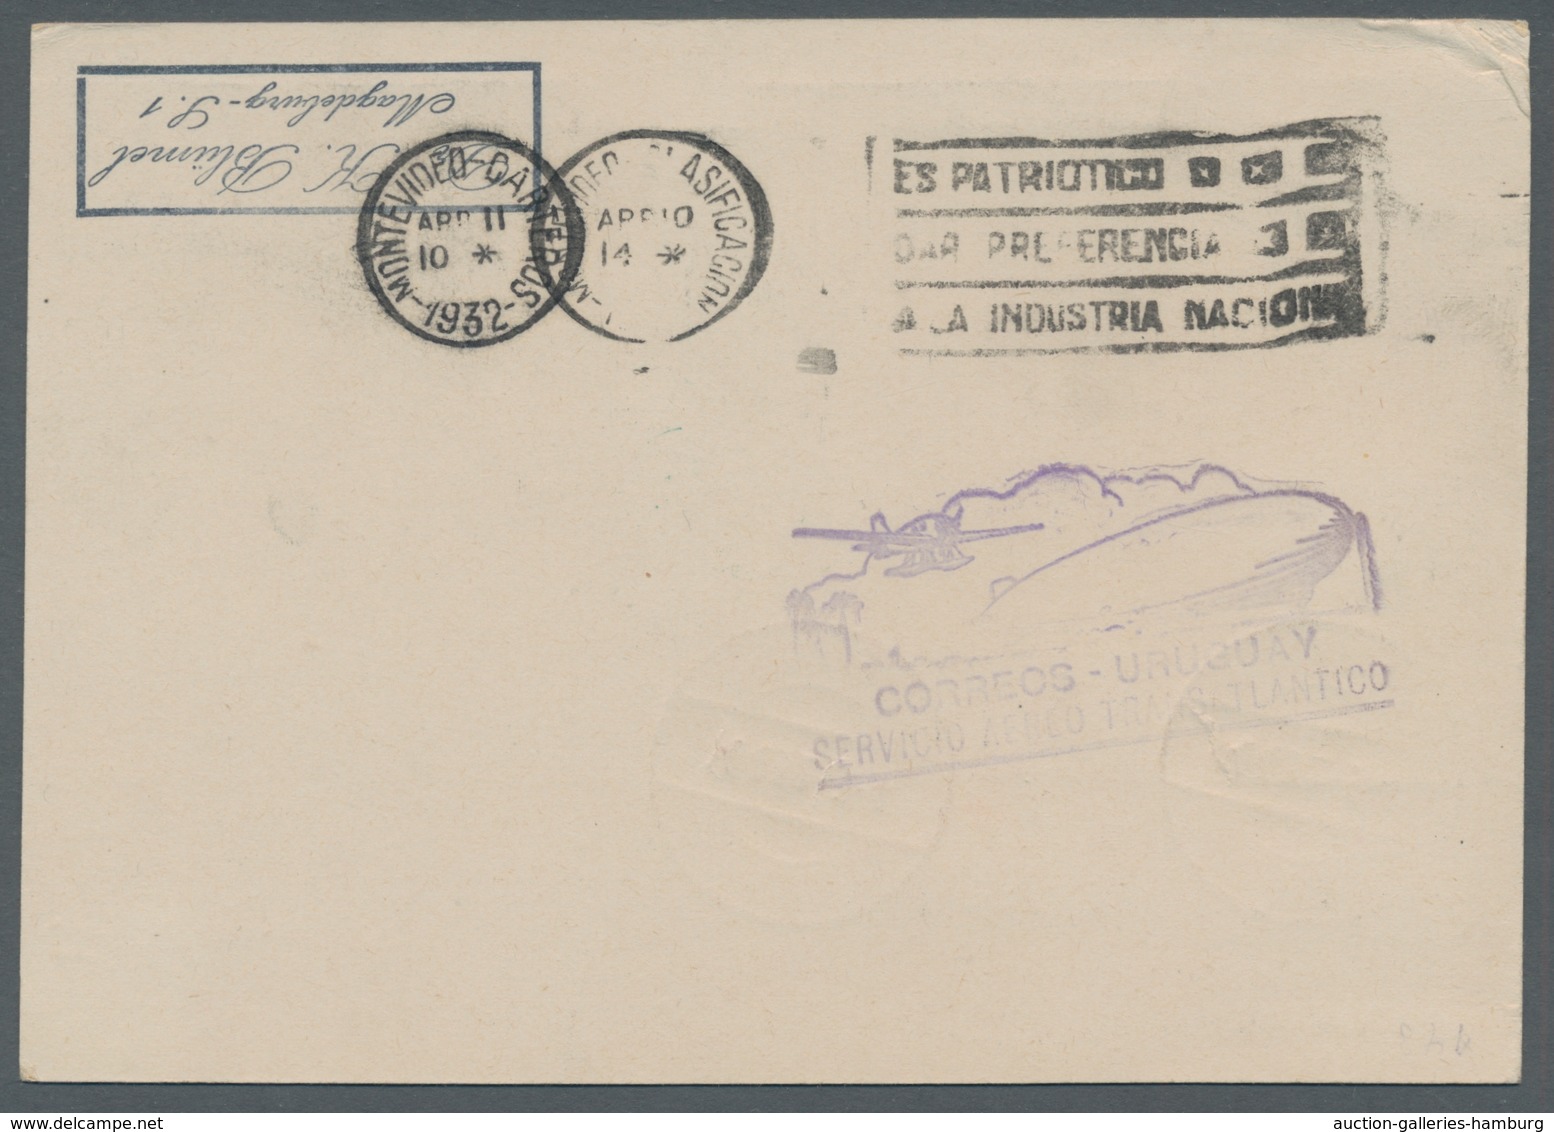 Zeppelinpost Deutschland: 1932, traumhaftes Ensemble Karten, alle gleich mit 1,65 RM frankiert. u.a.